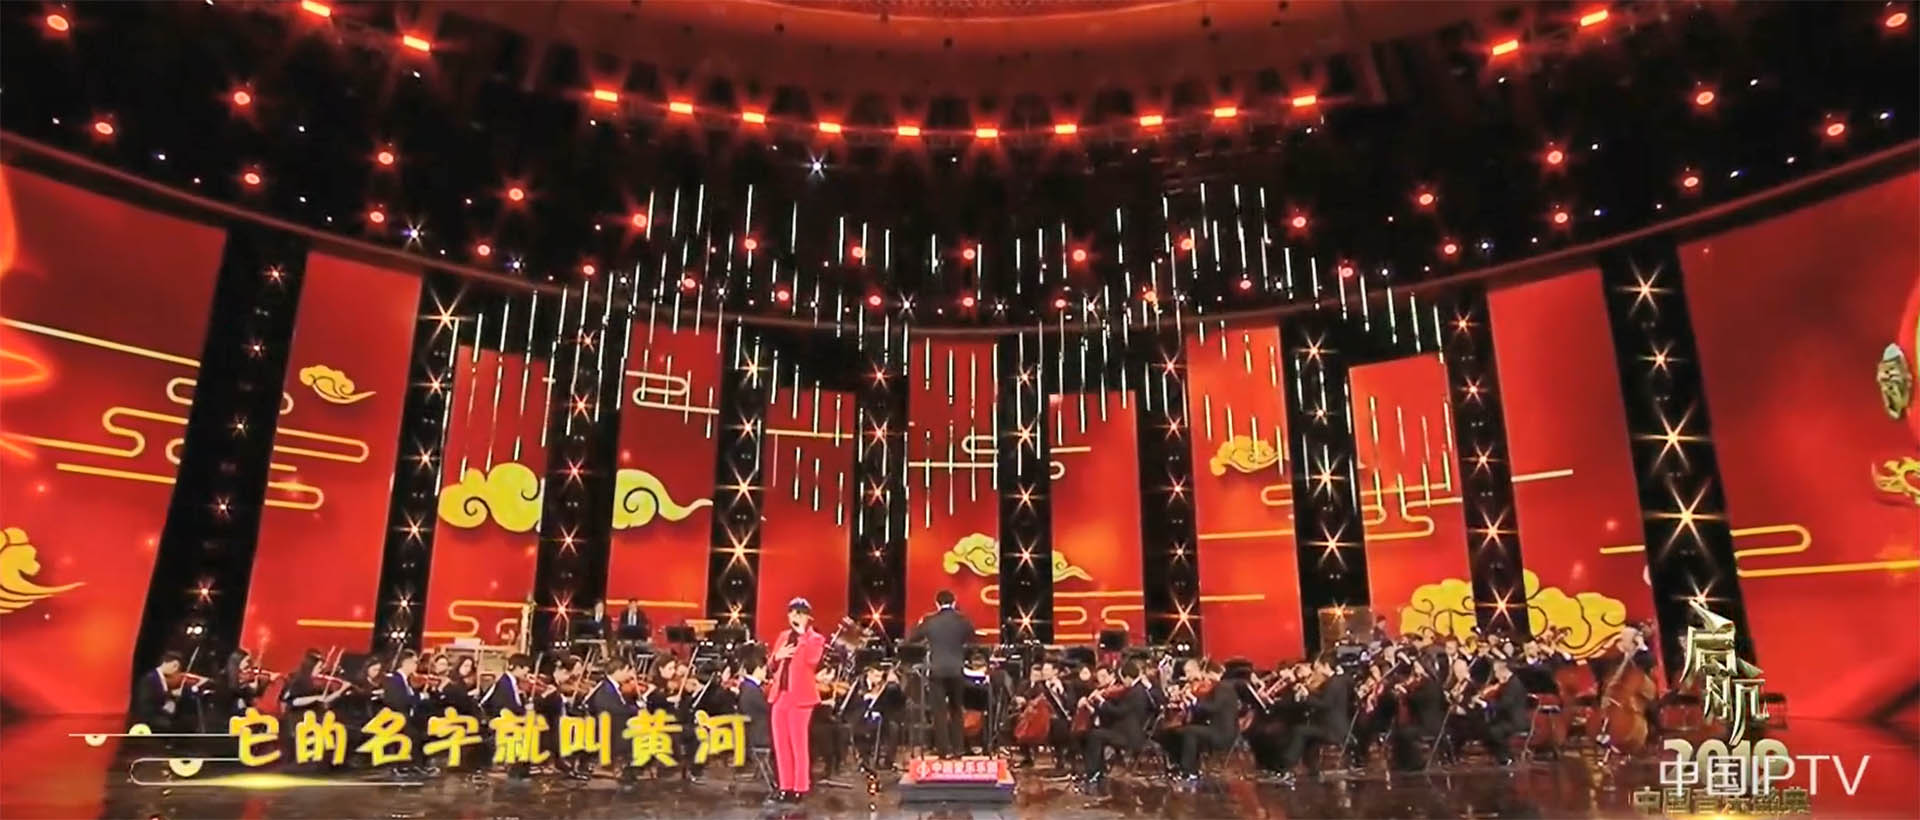 CCTV 1 Program of 2019 Music Festival  (2)